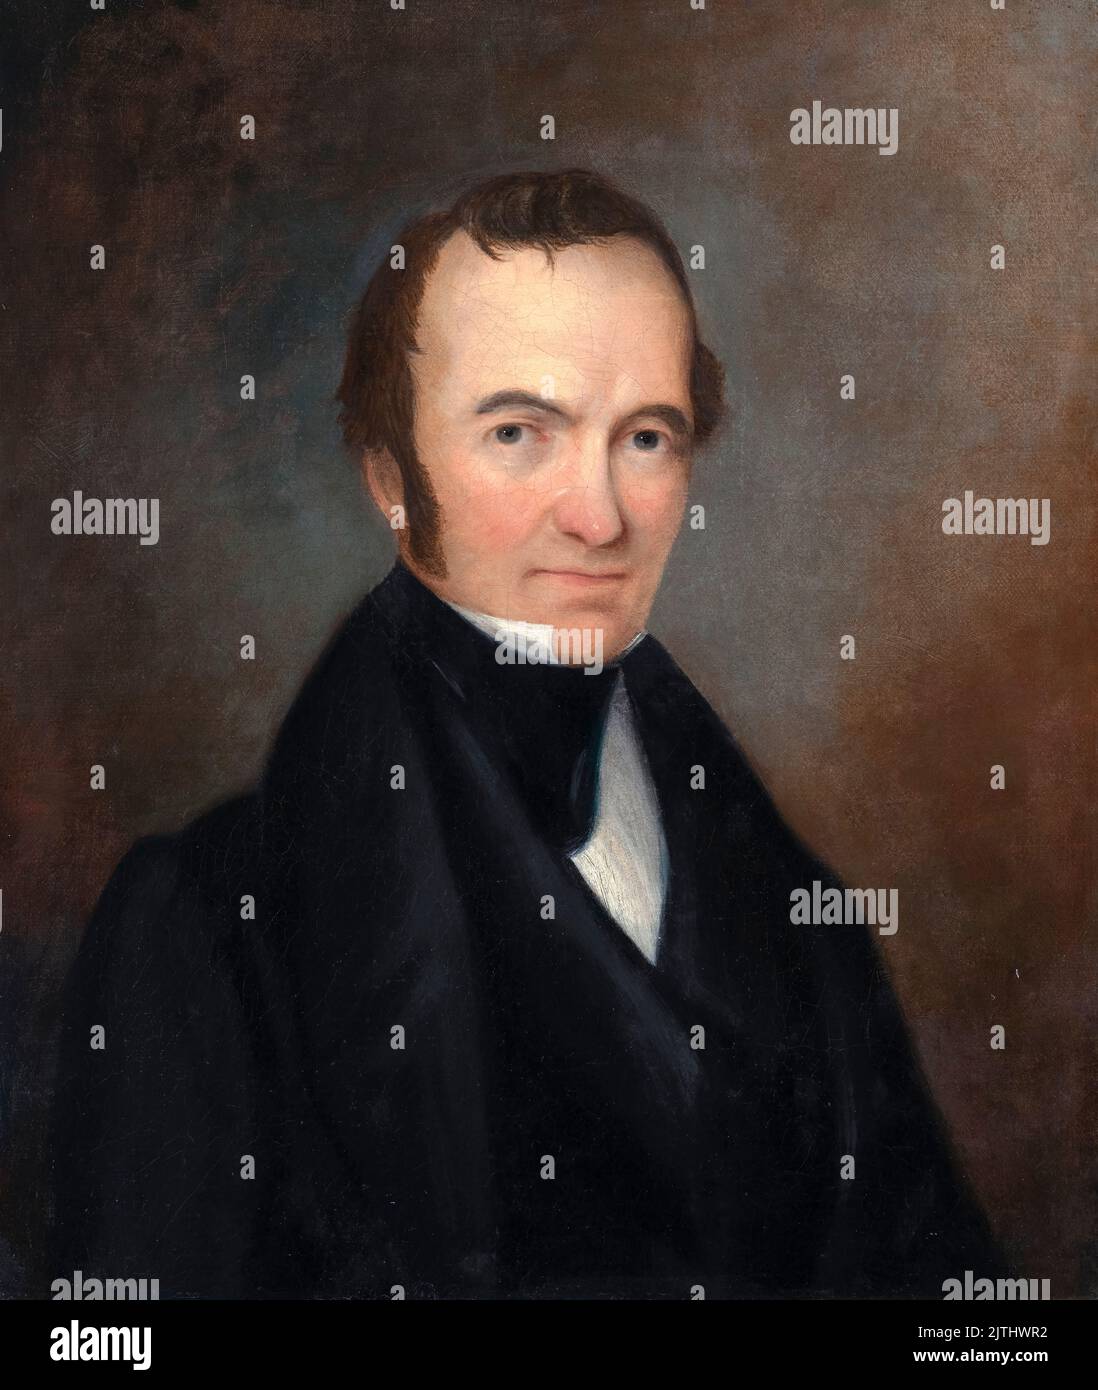 Stephen Fuller Austin (1793-1836), in Amerika geborener Impresario, bekannt als der Vater von Texas und der Gründer von Anglo Texas, Porträtmalerei in Öl auf Leinwand um 1840 Stockfoto